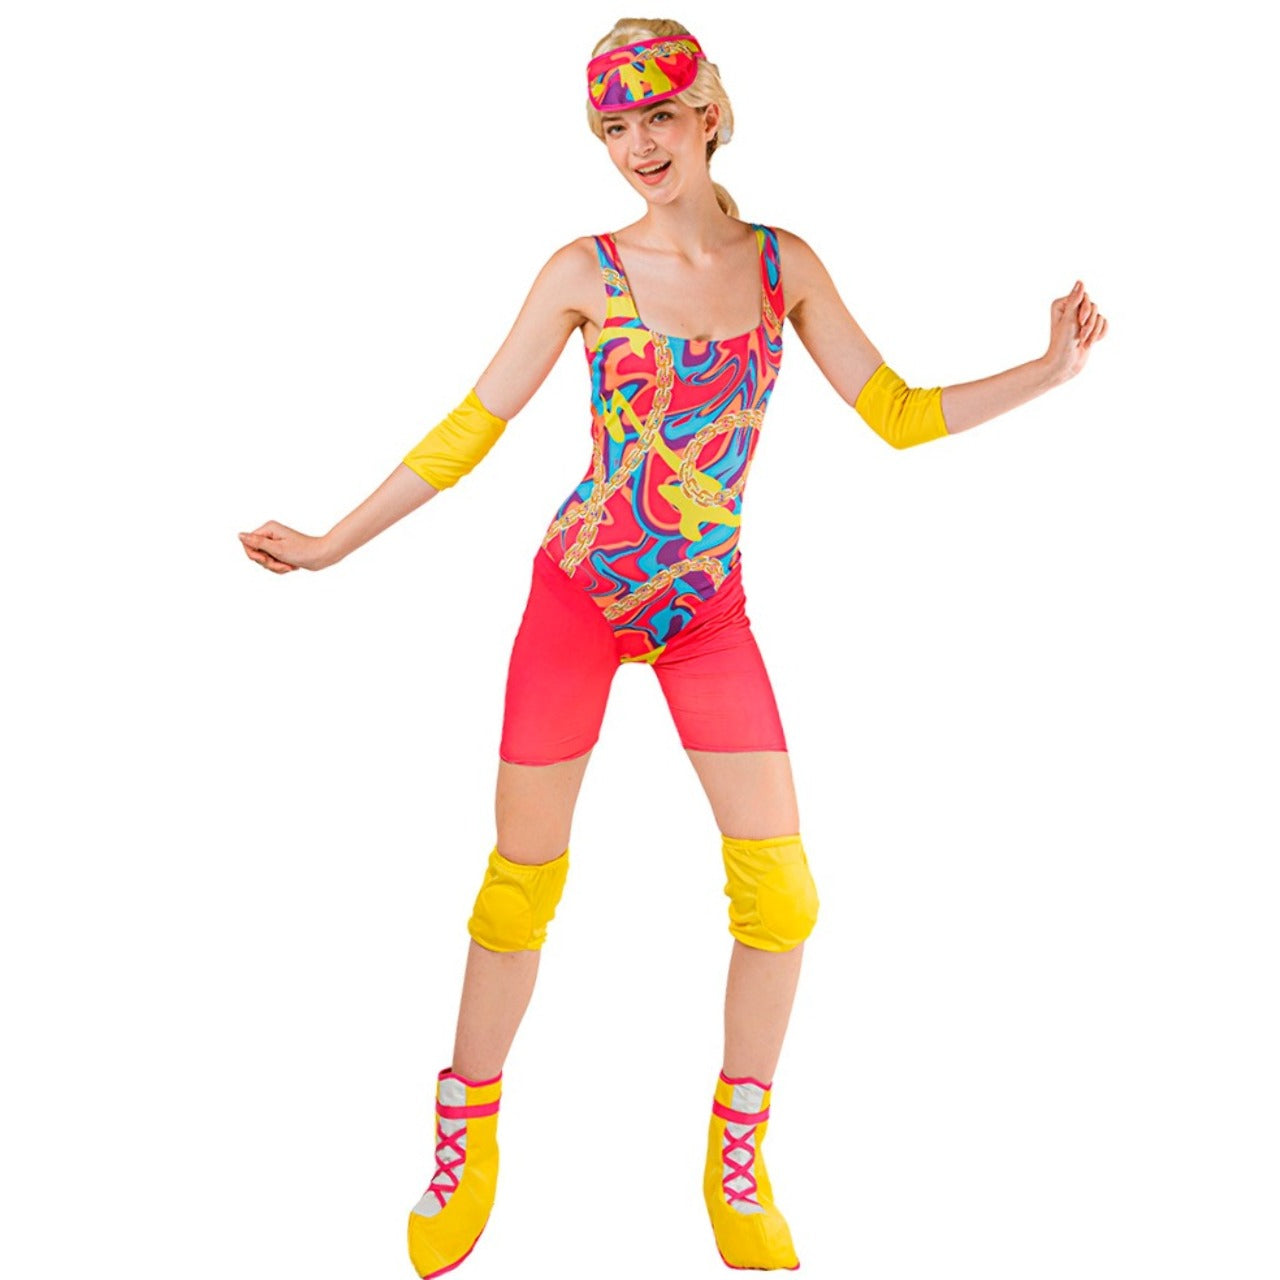 Acquista online il costume di Barbie Skater per donna